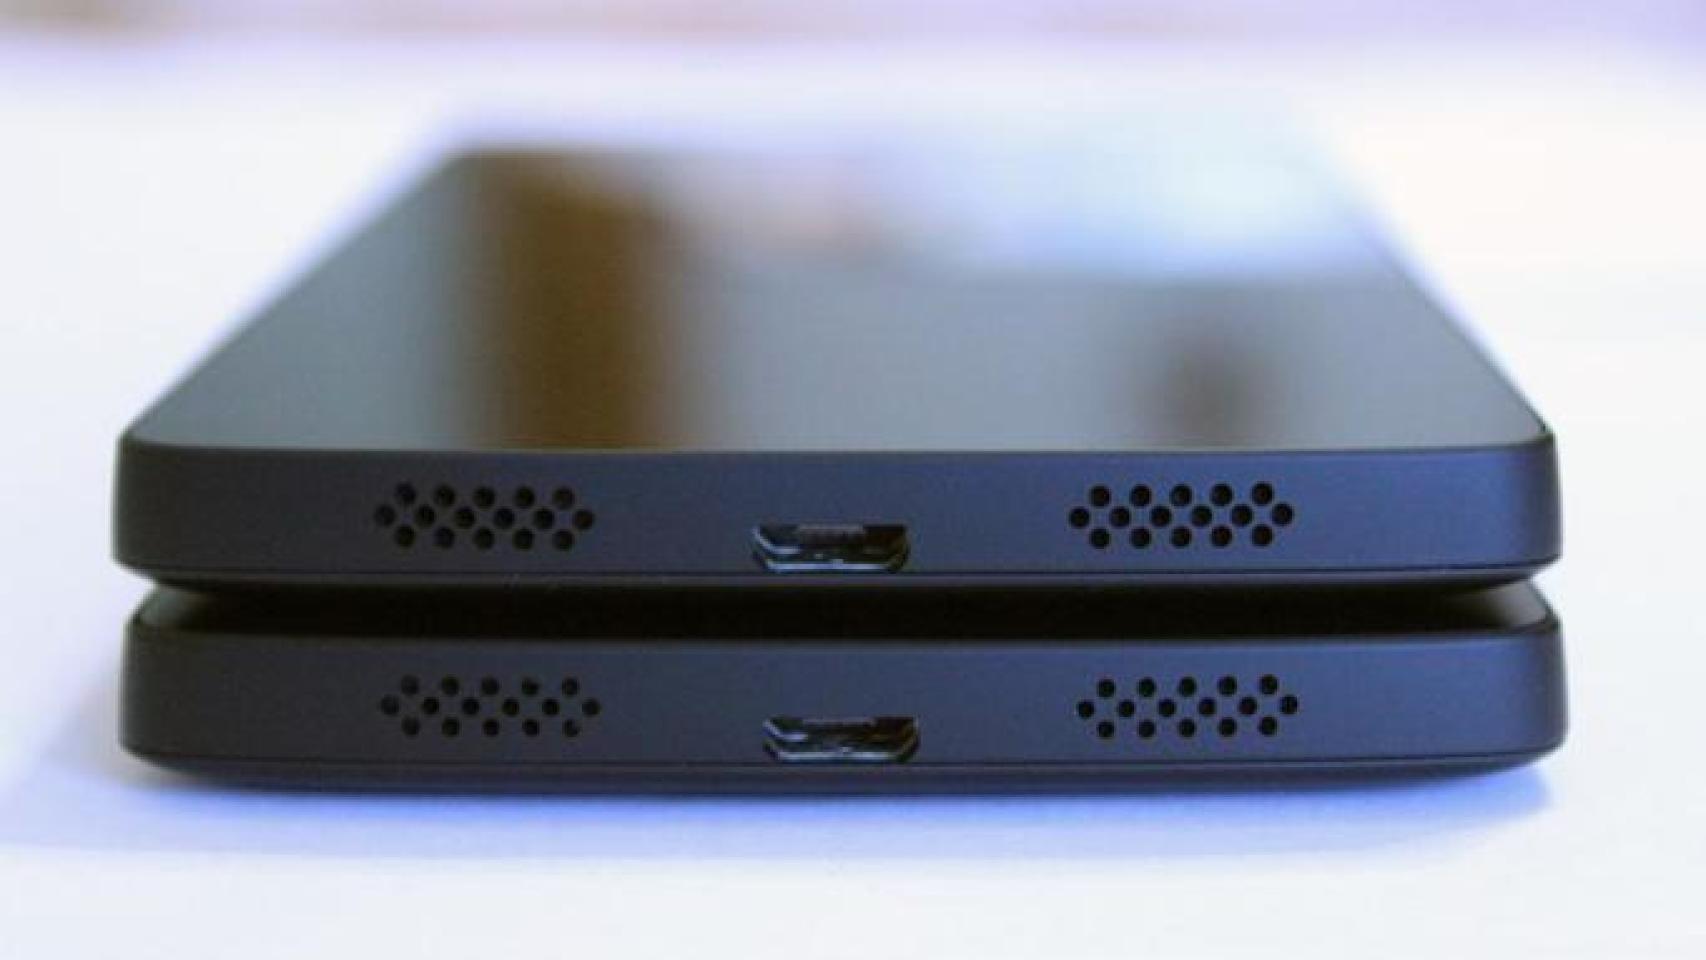 Los Nexus 5 vendidos ahora vienen con pequeñas revisiones en los altavoces y la carcasa